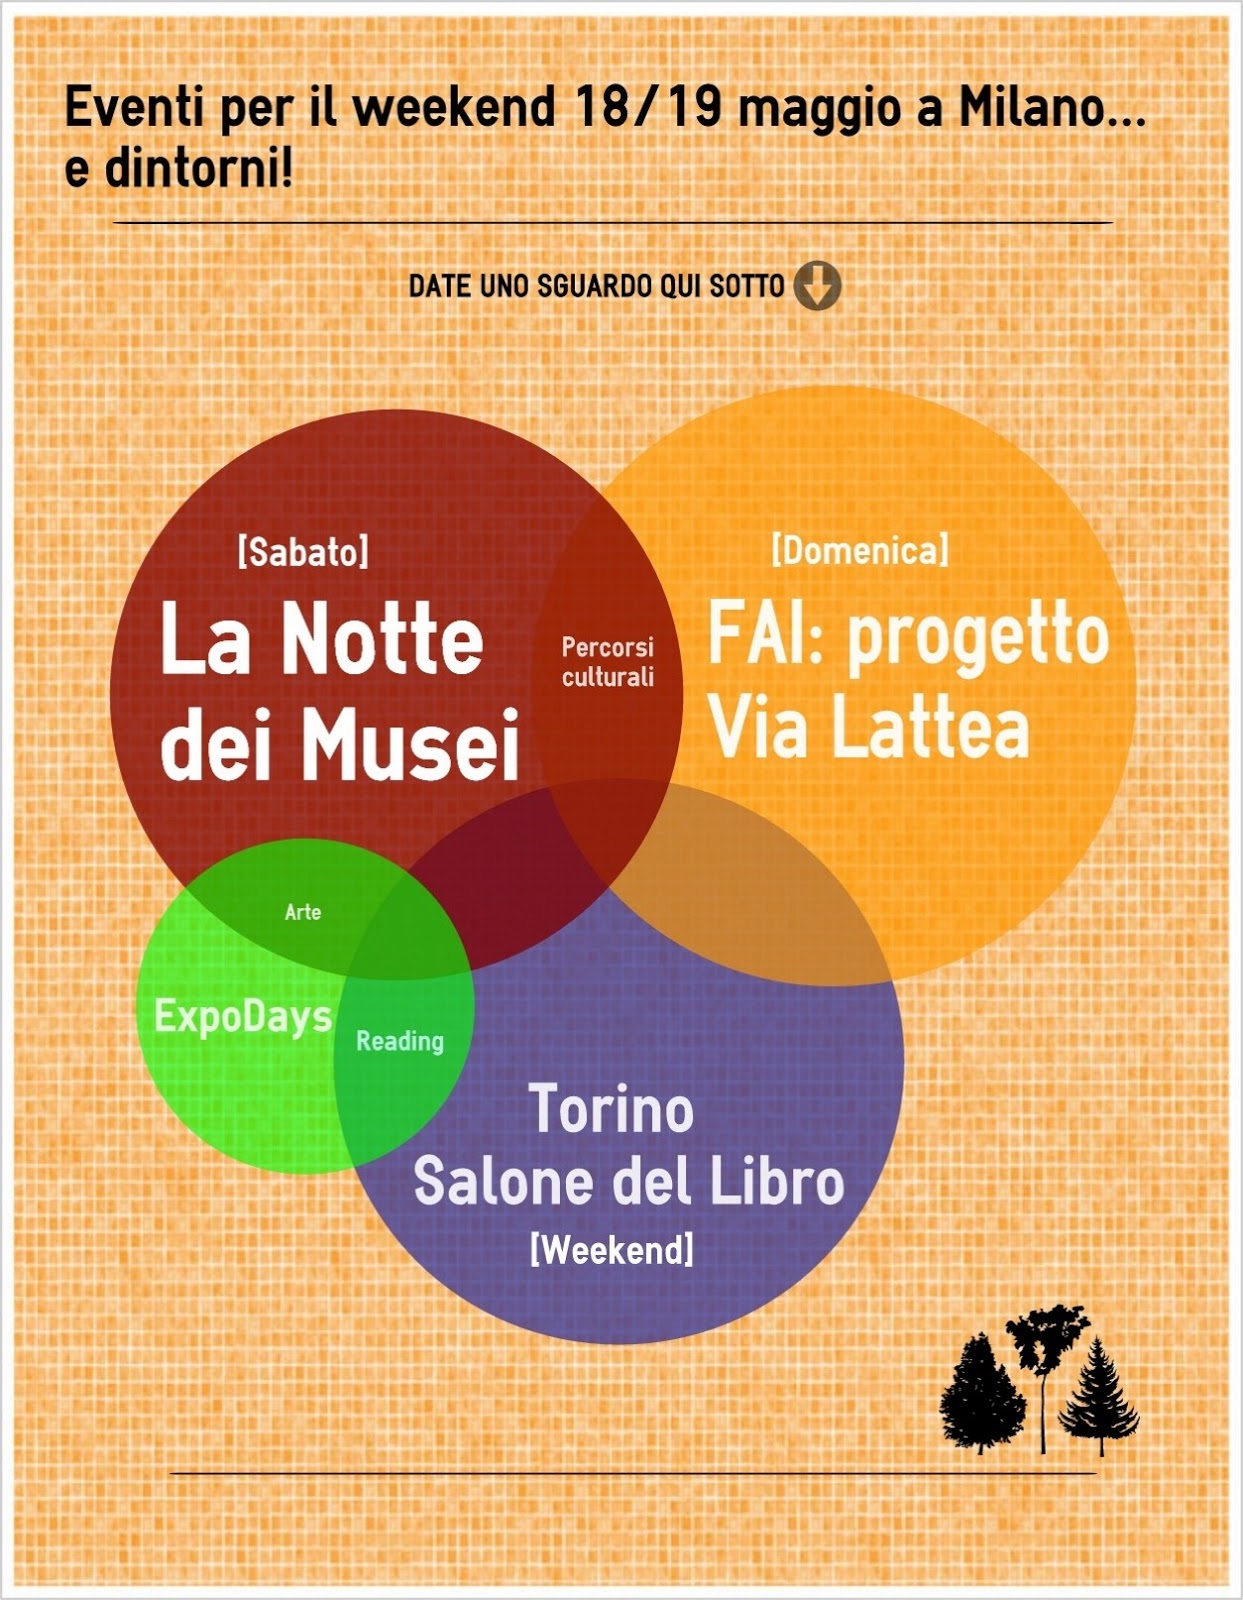 Weekend 18 e 19 maggio a Milano infografica Eventi